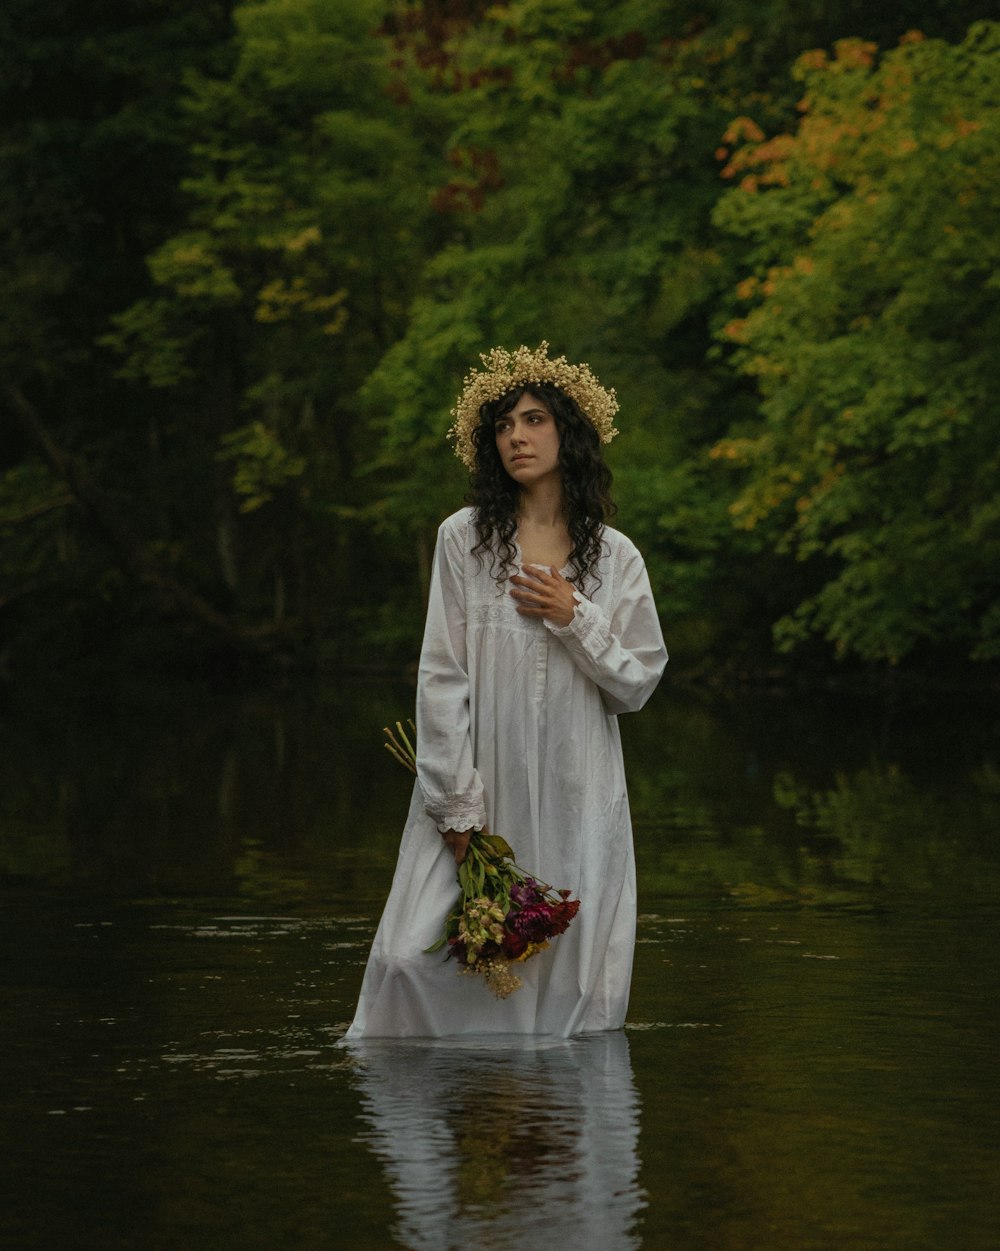 Eine Frau in einem weißen Kleid steht in einem Fluss